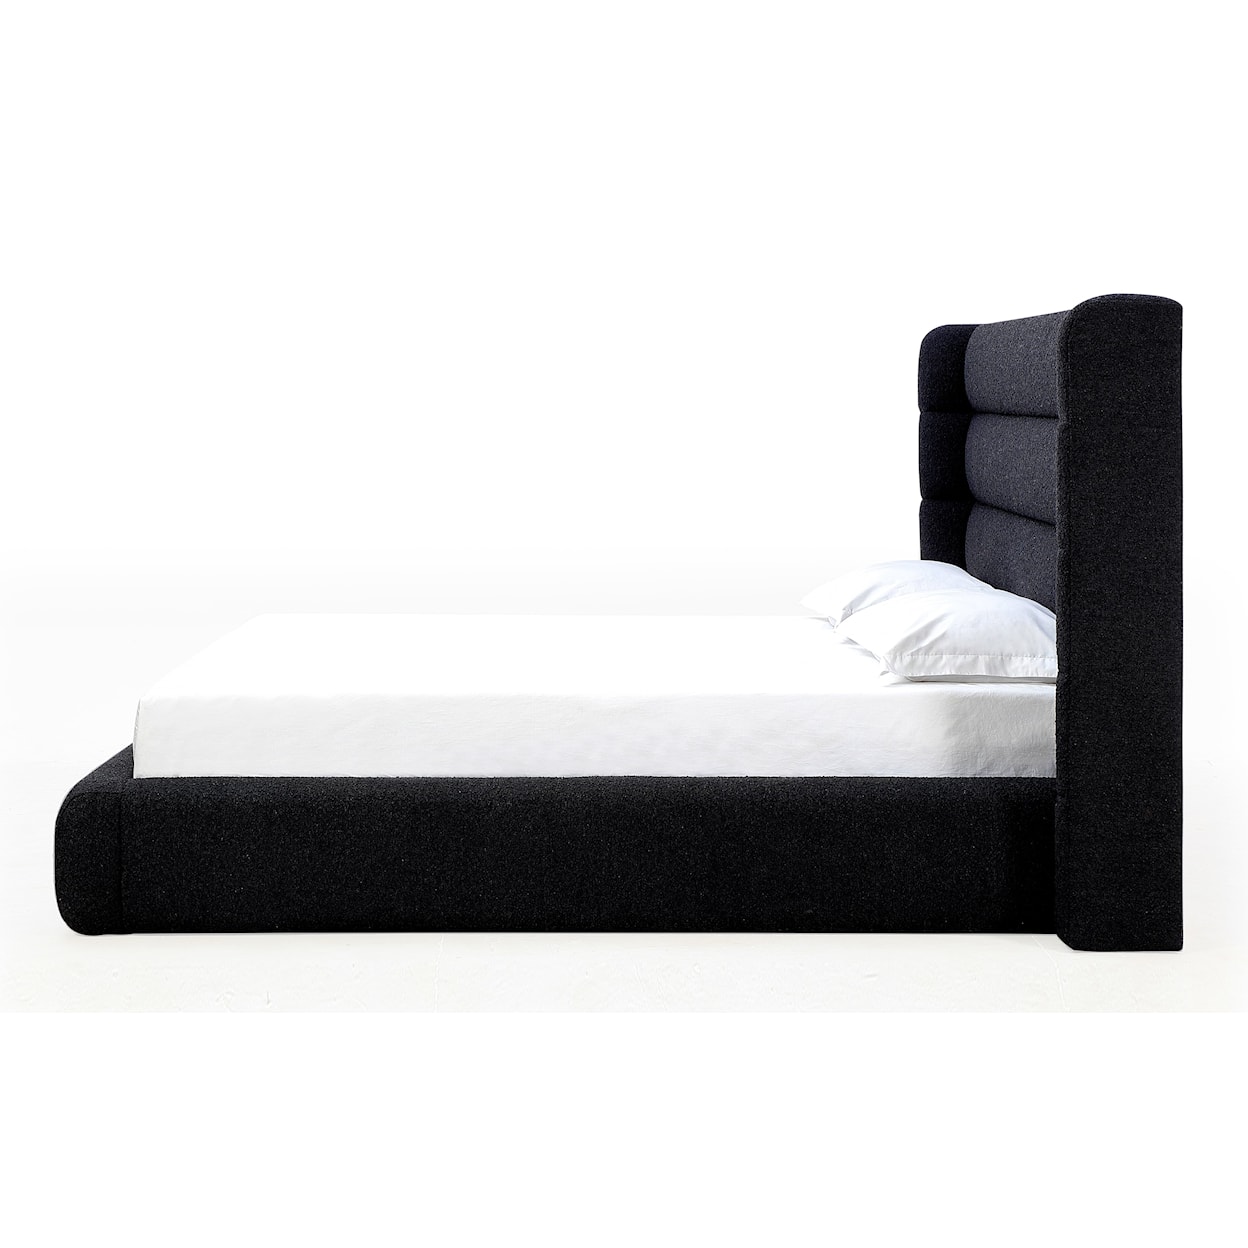 Modus International Formosa Frank Upholstered King Bed